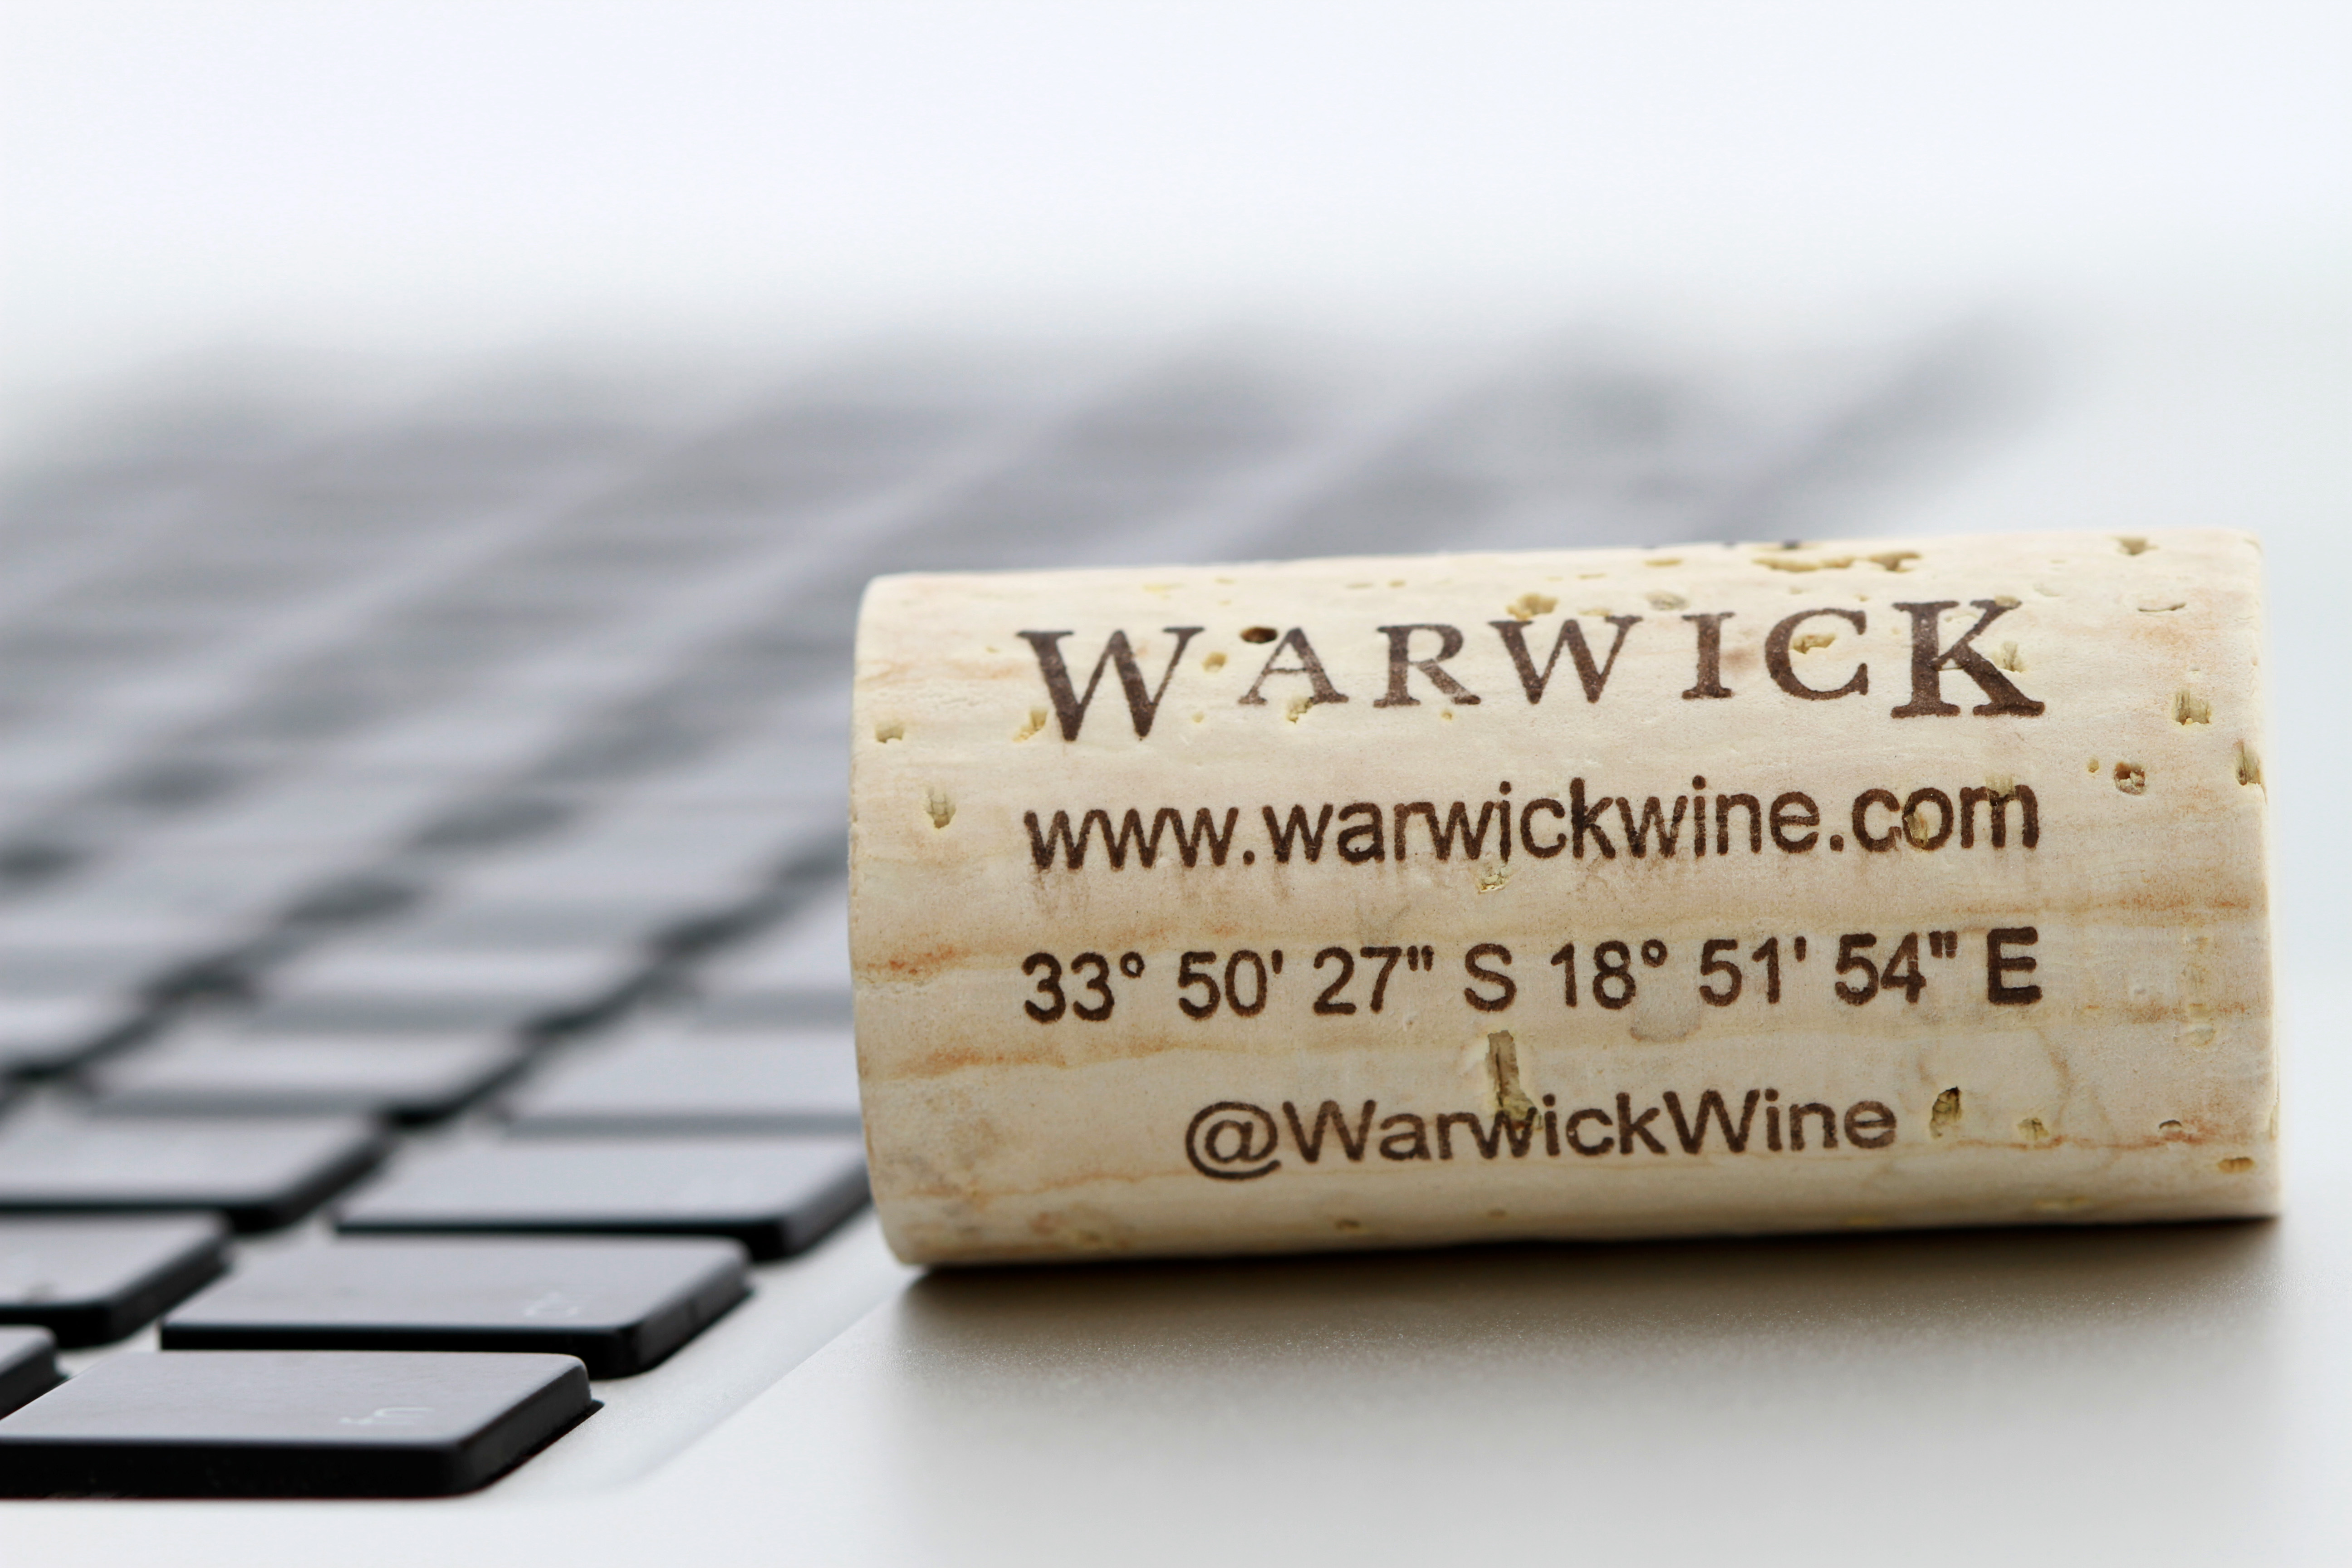 Warwick winery's #TwitterCork